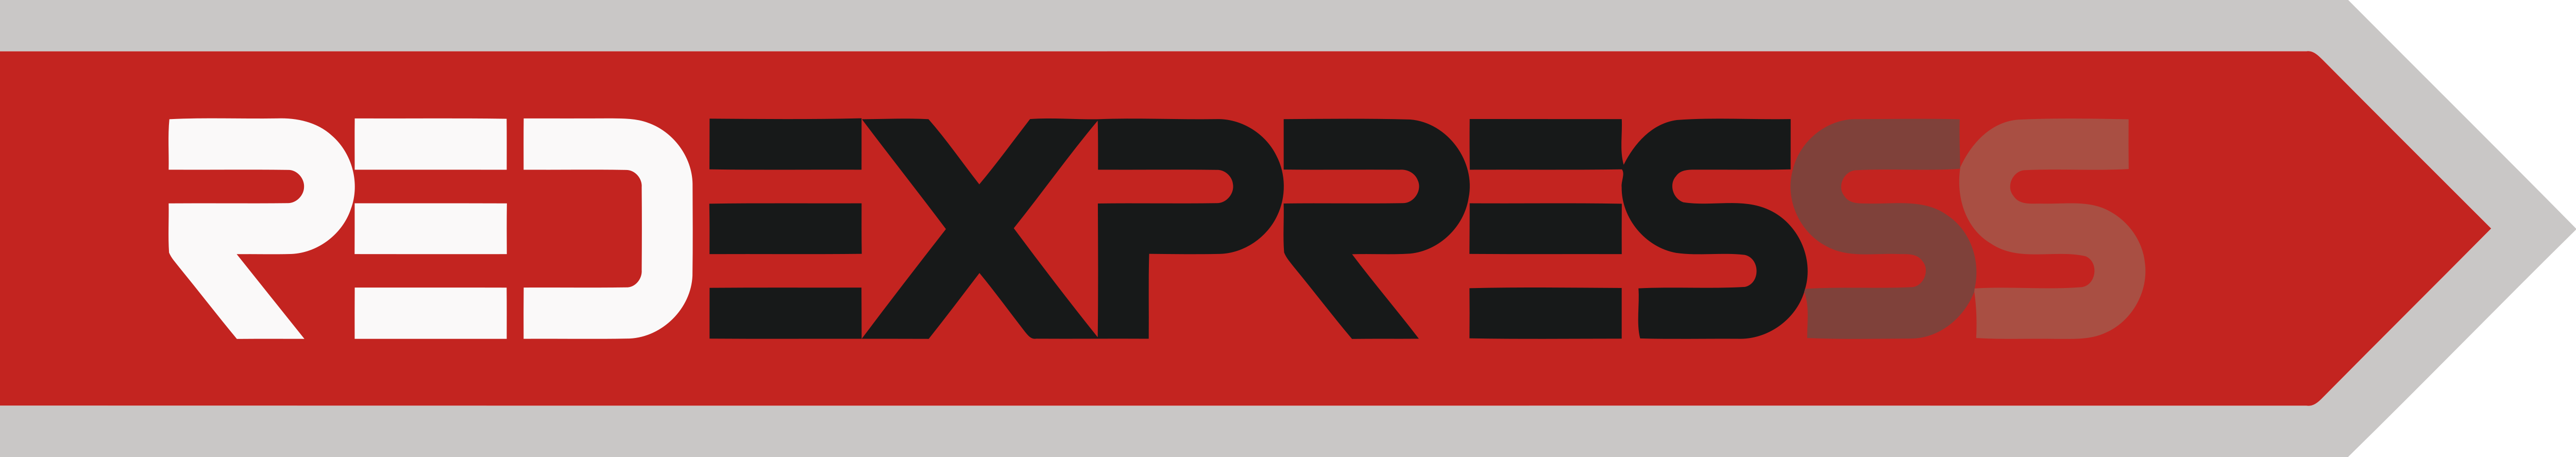 Сайт экспресс. Express логотип. Логотип redexpress. Ред экспресс Курьерская служба. Логотип транспортной компании экспресс.